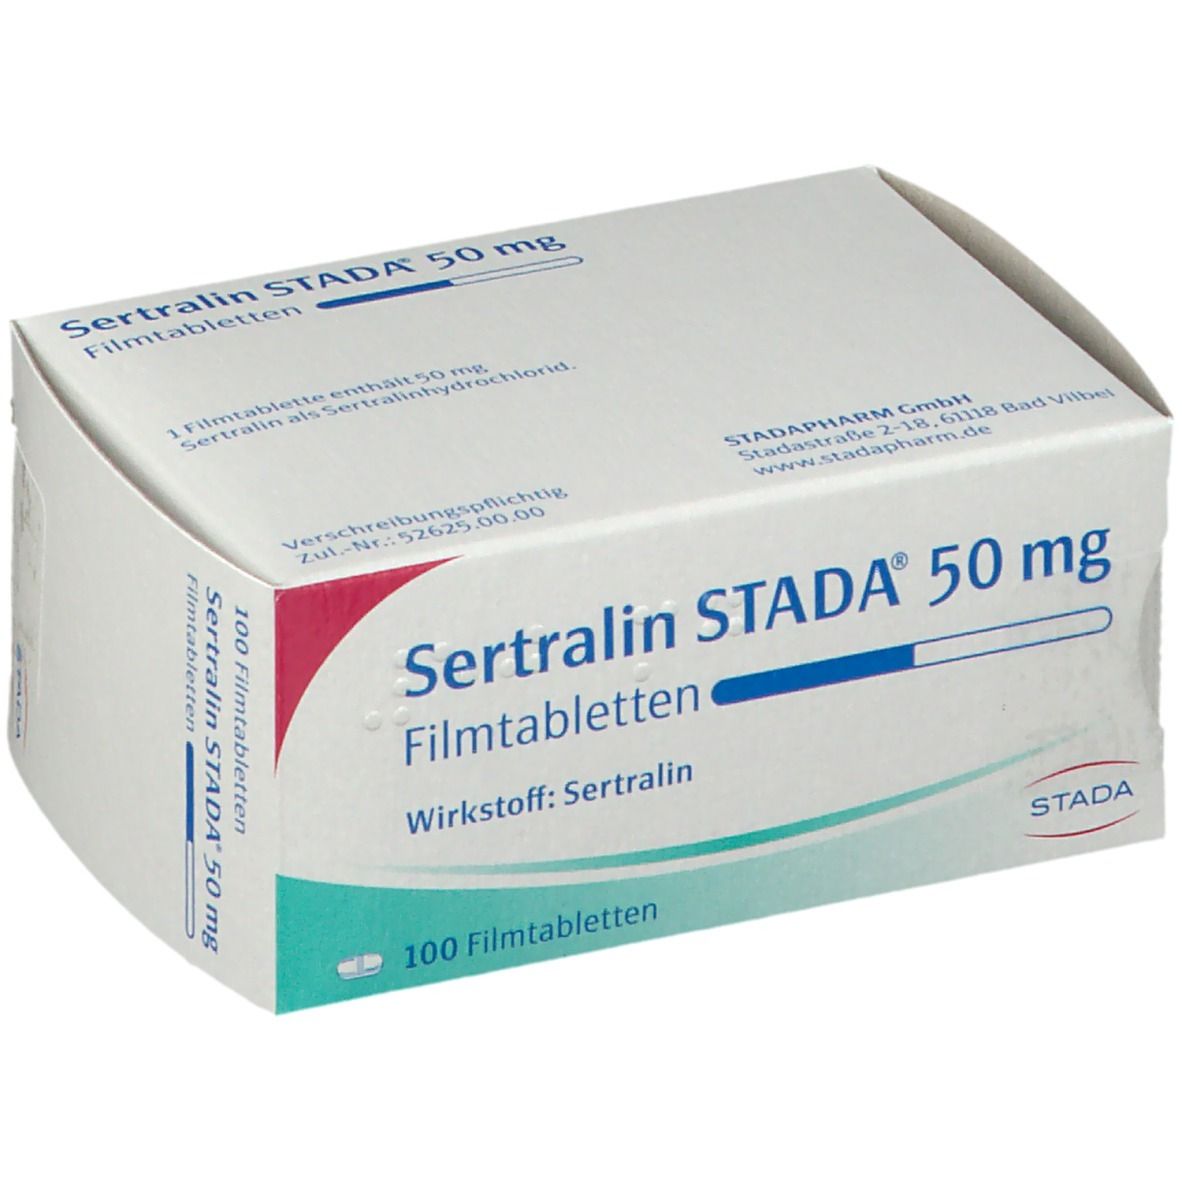 Sertralin STADA® 50 mg